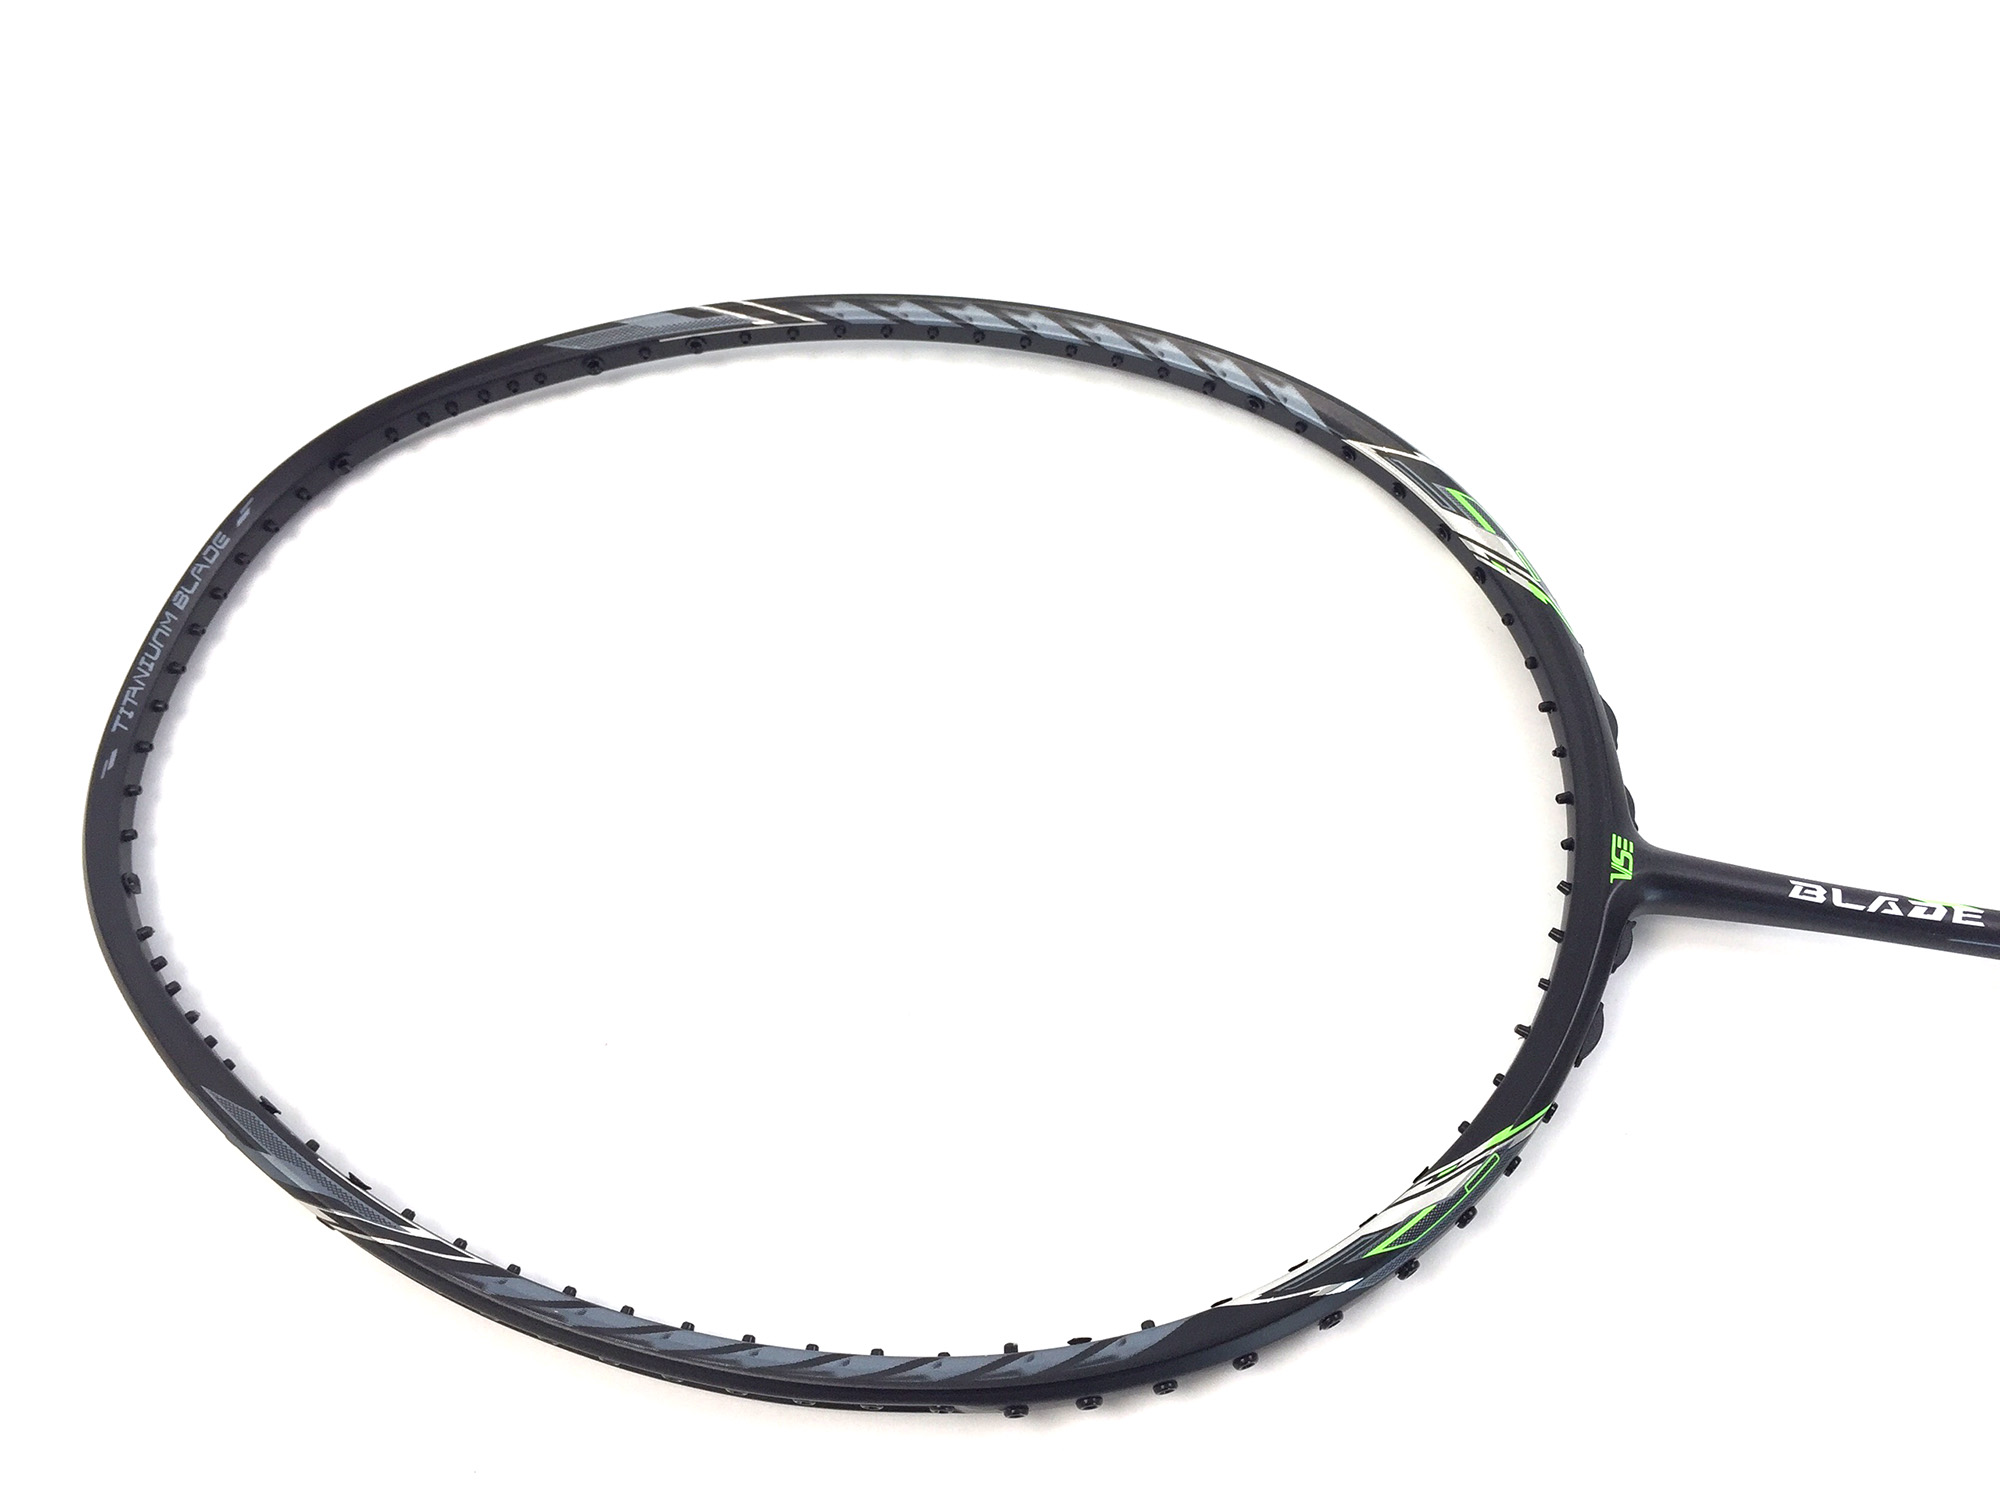 Vợt Cầu Lông VS 7300 BALADE - Đen Phối Xanh tặng kèm dây đan vợt